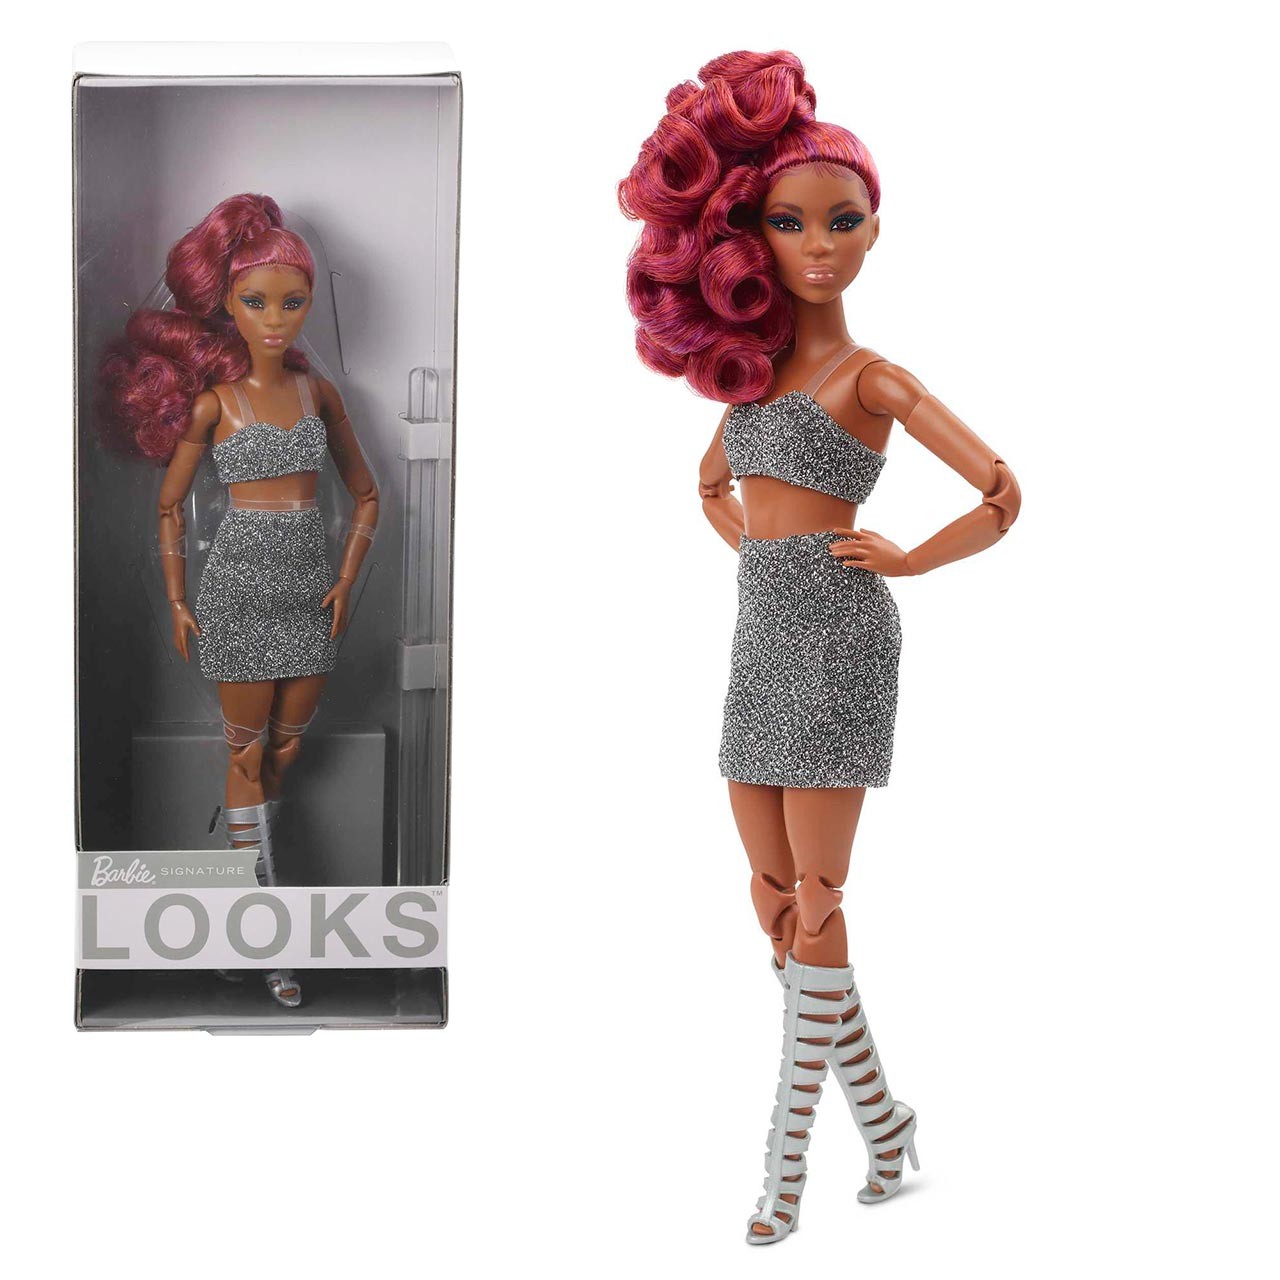 Barbie Signature Looks Muñeca Vestido Largo de Colección +6 años